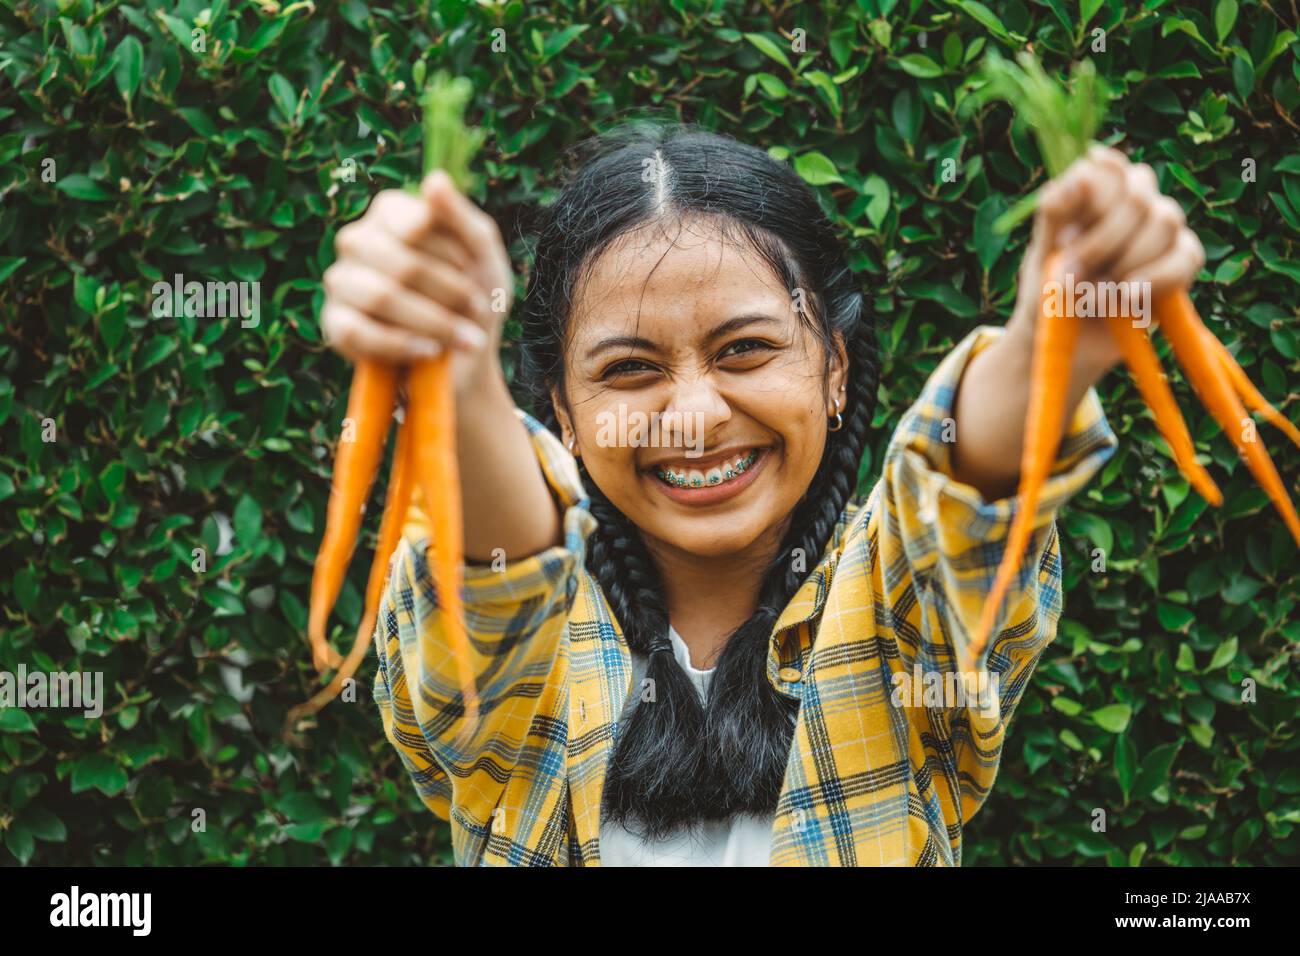 manger des légumes végétaliens pour un bon sain pour la vie concept. jeune main de l'adolescence tenant bébé carotte sourire heureux. Banque D'Images